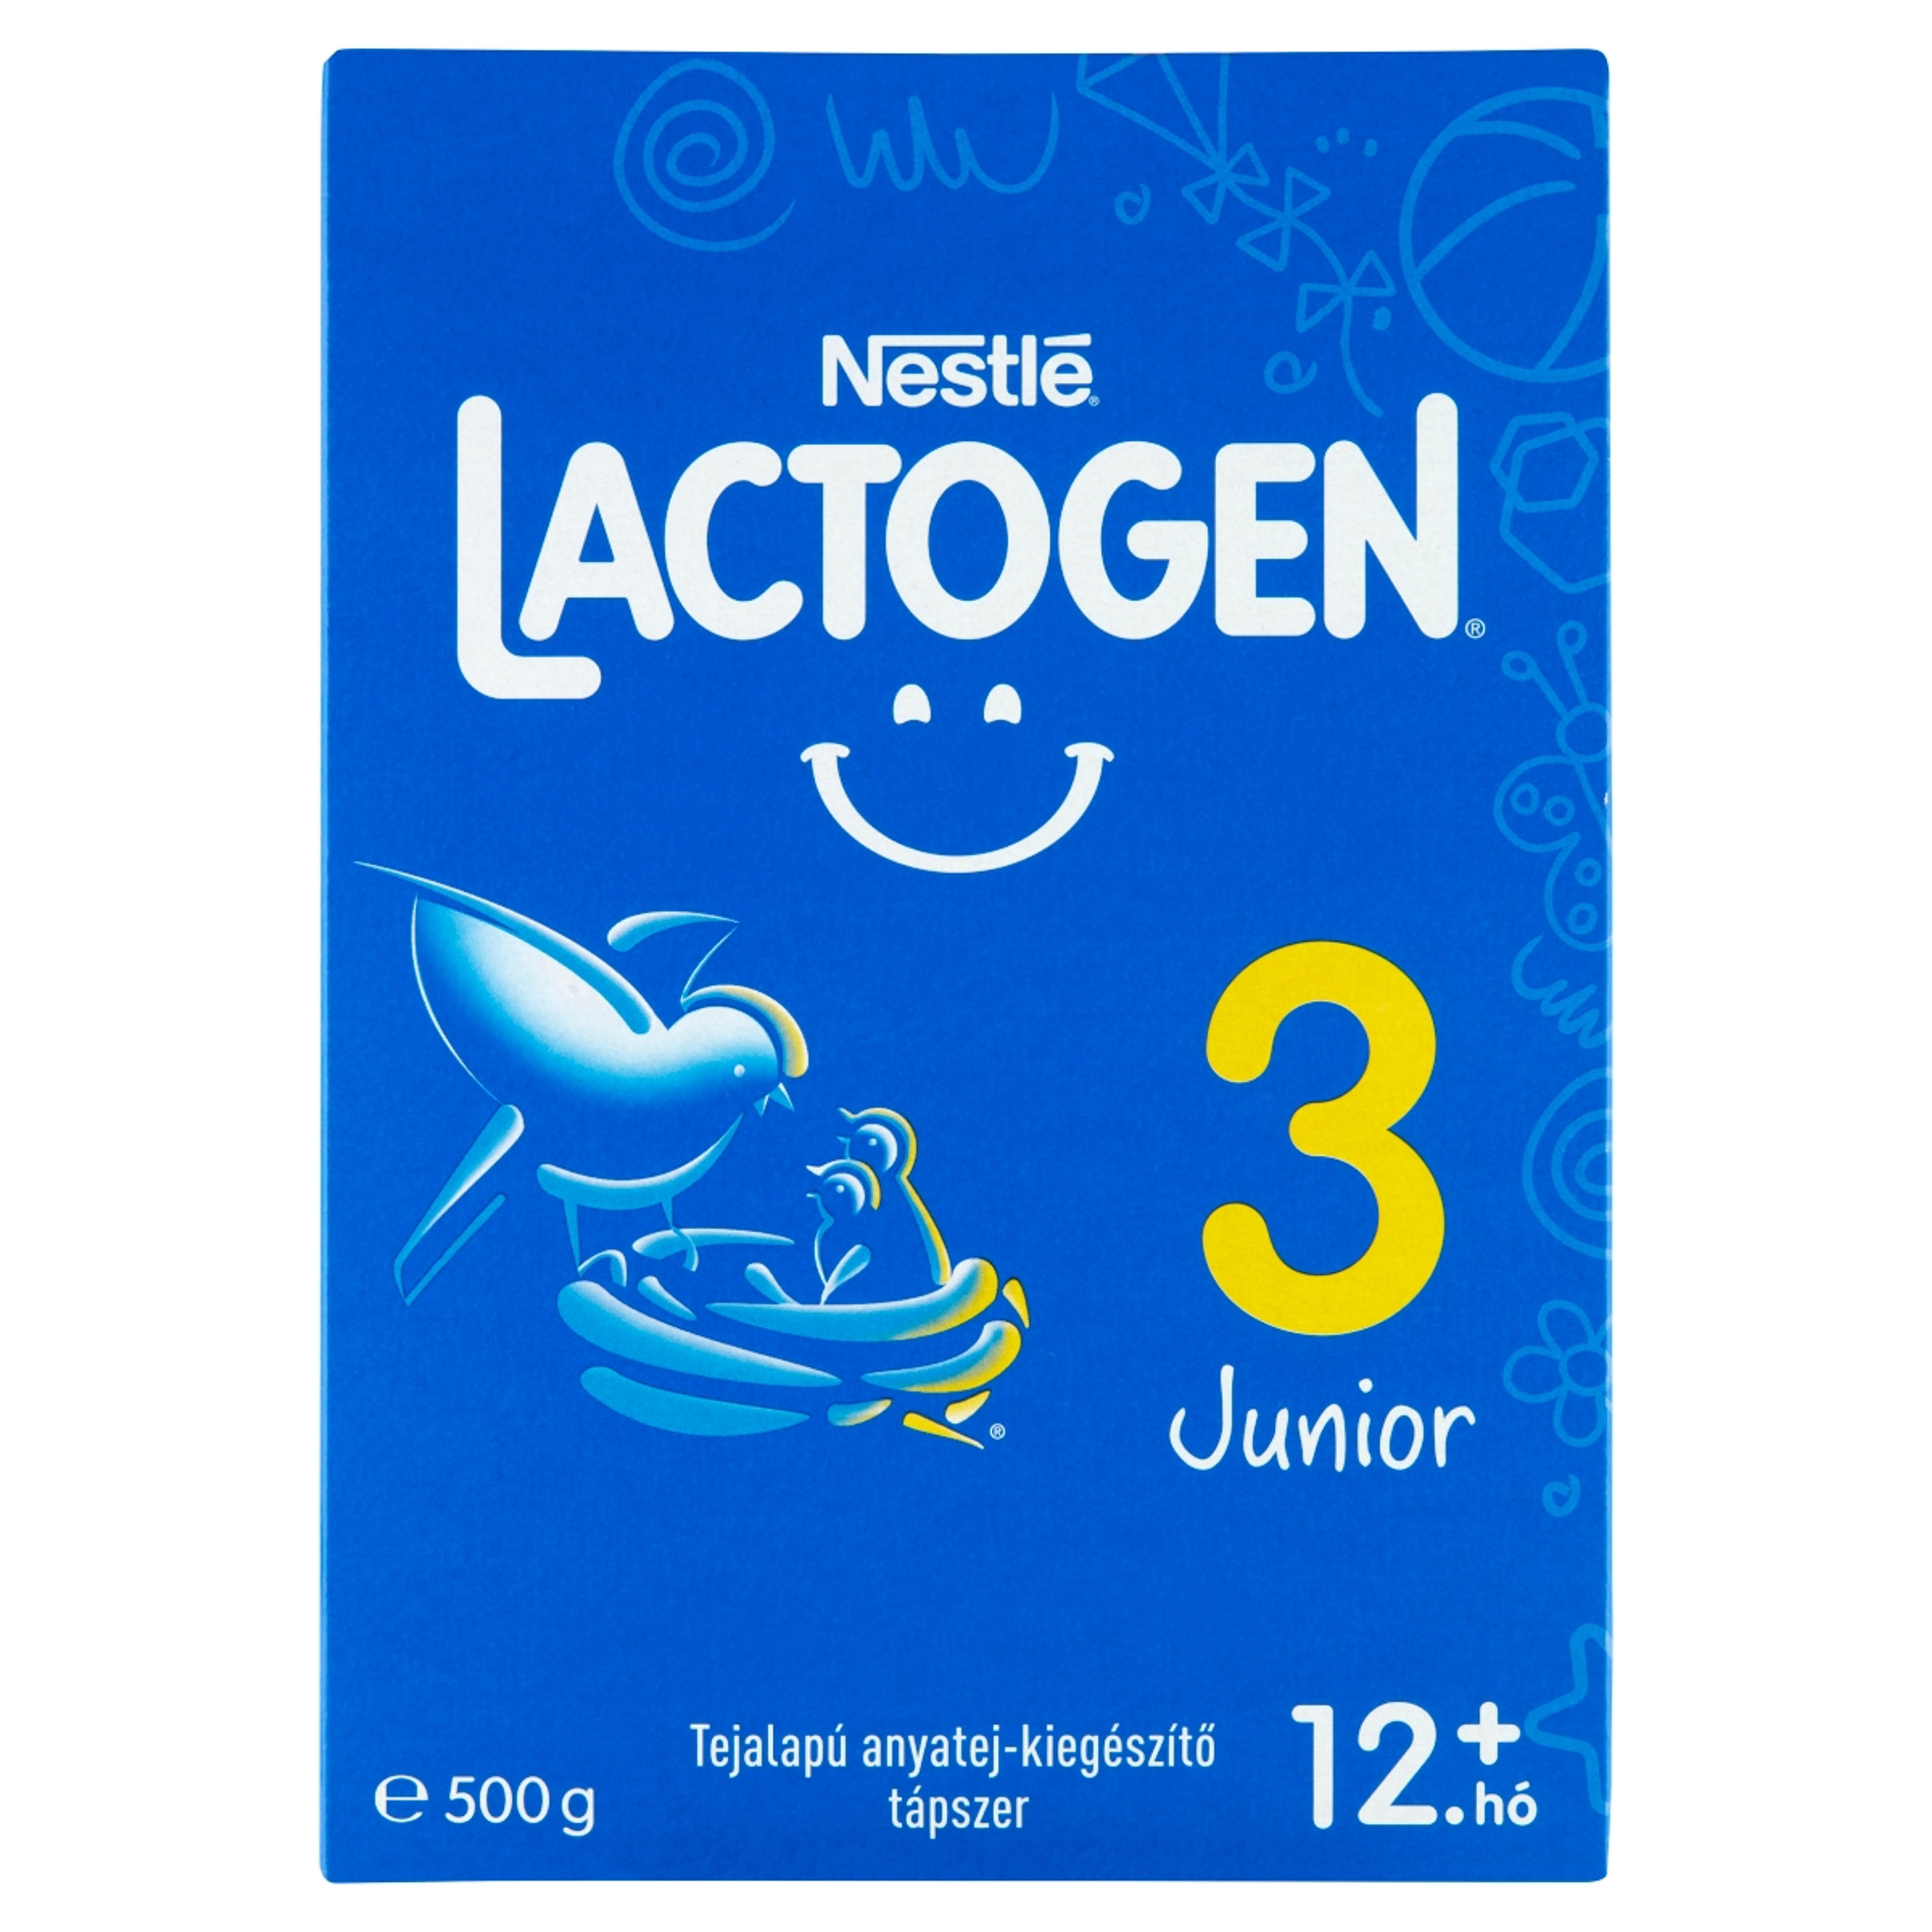 Nestlé Lactogen 3 Junior tápszer 12 hónapos kortól - 500 g